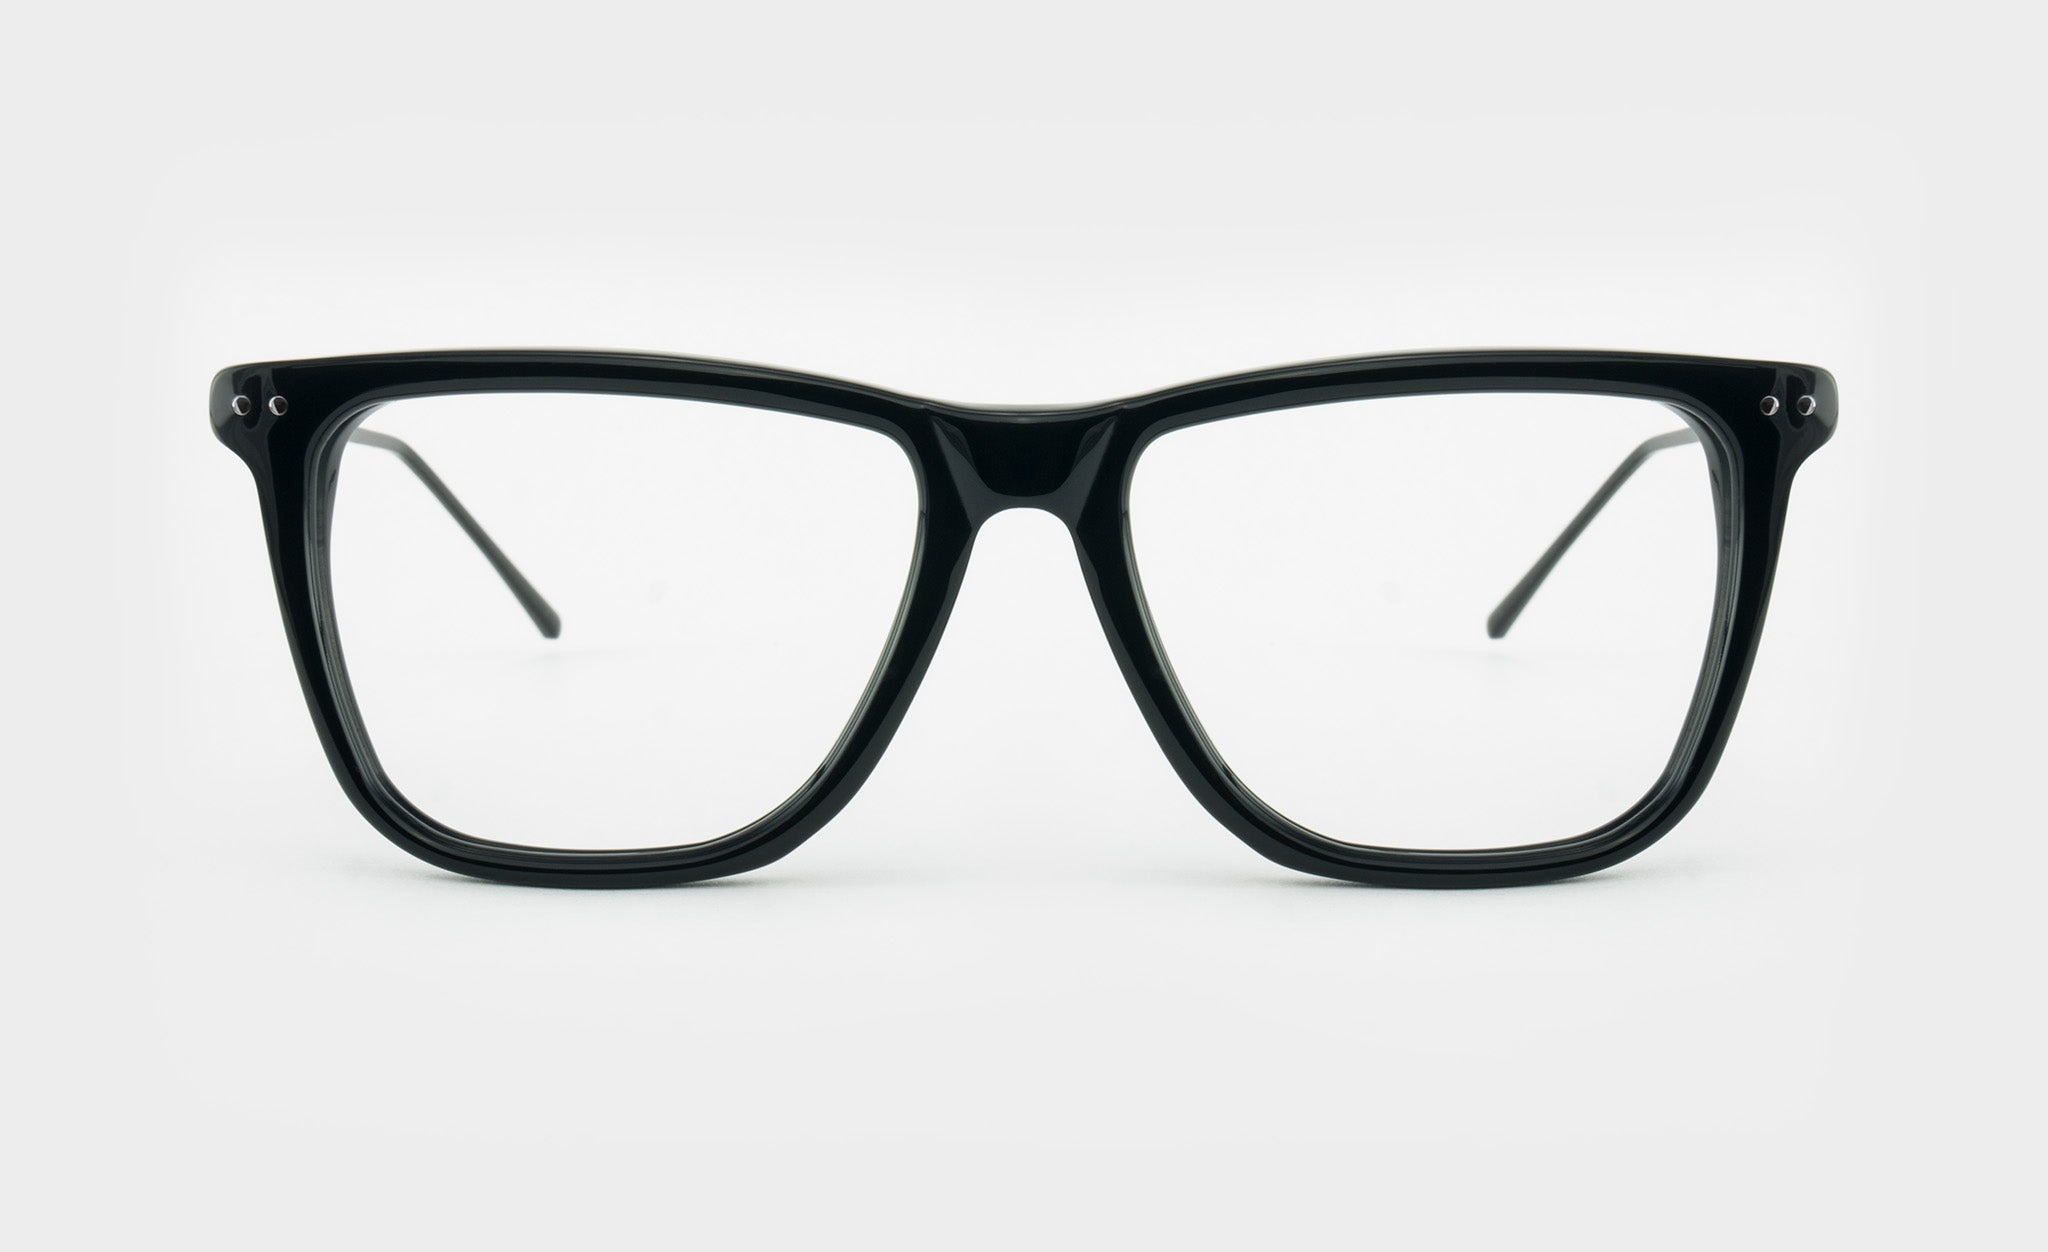 Slim black rectangular shape eyeglasses